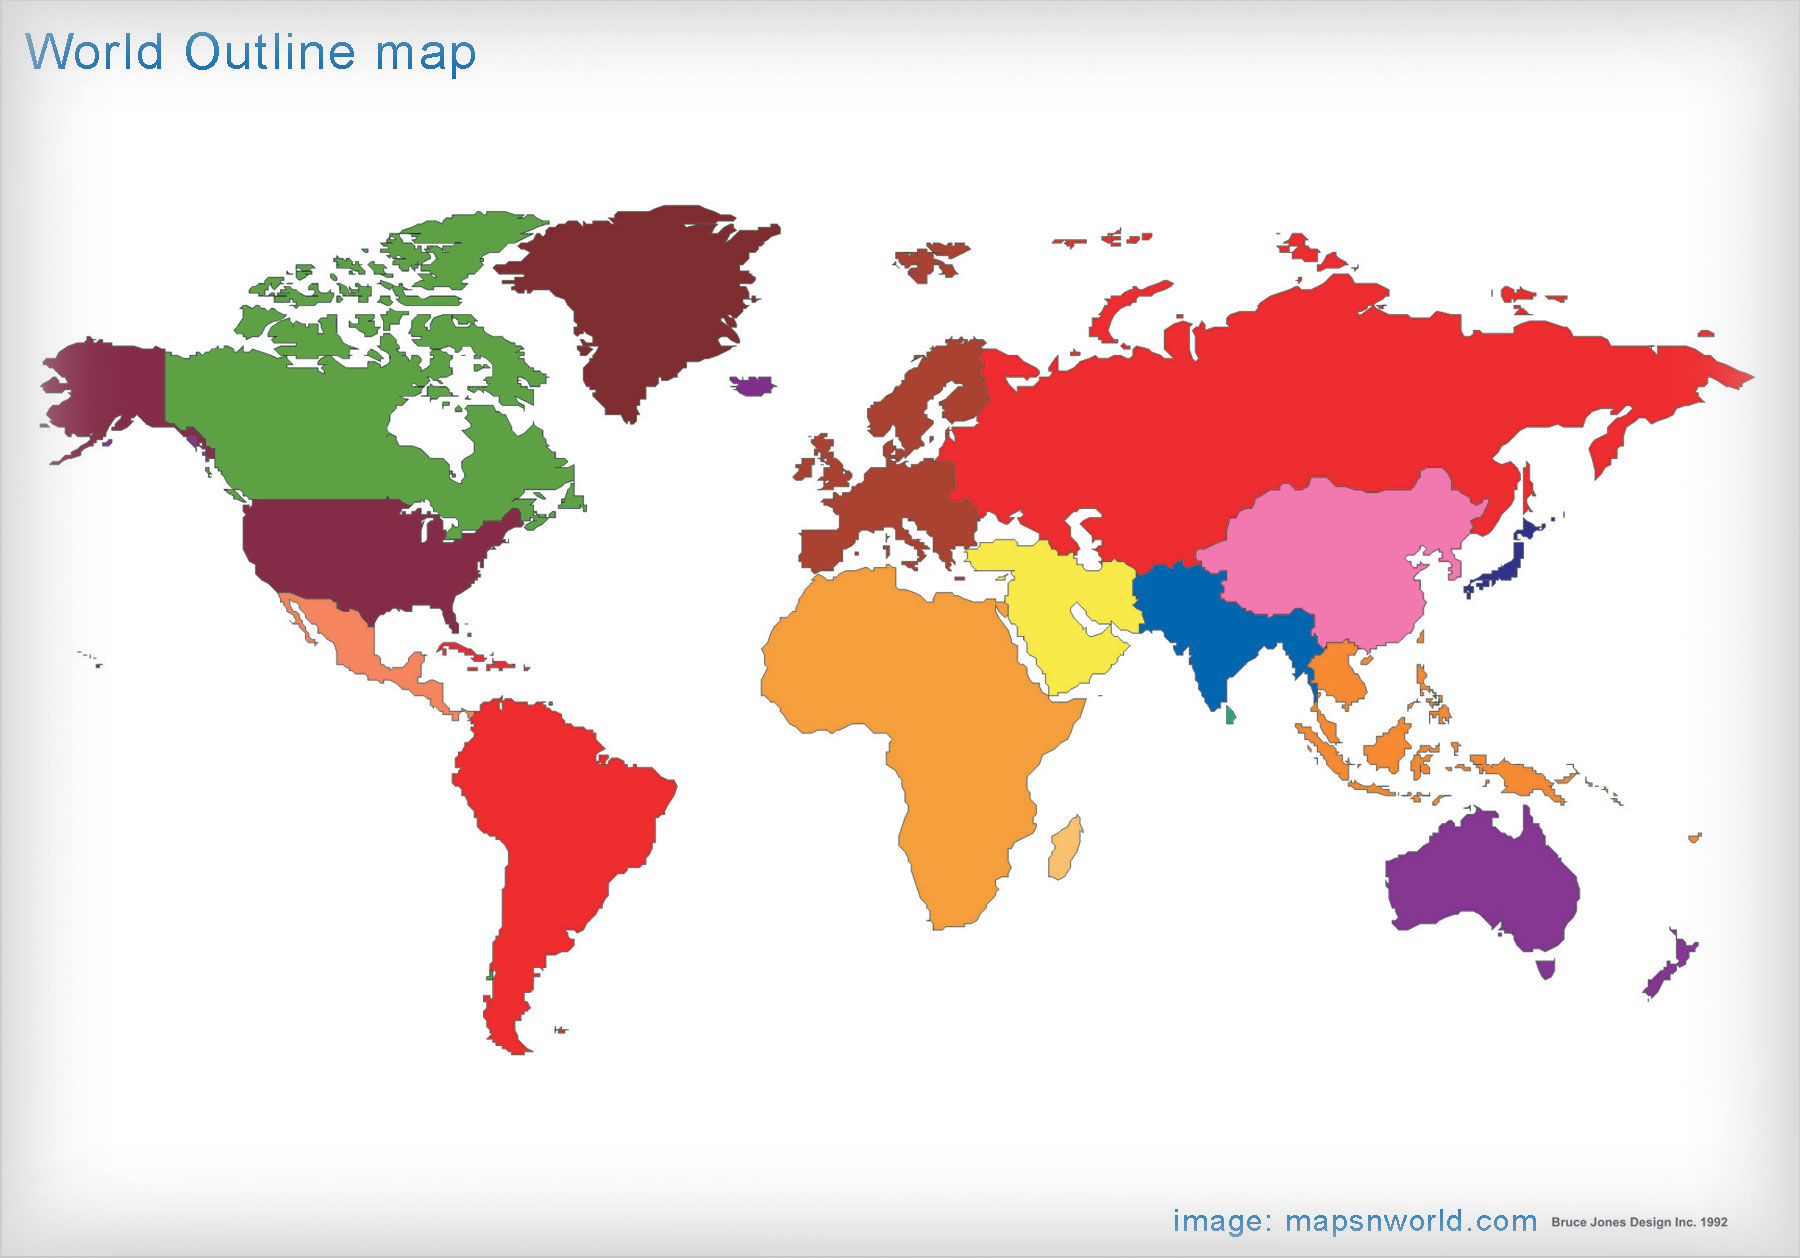 World Outline Map bigger size